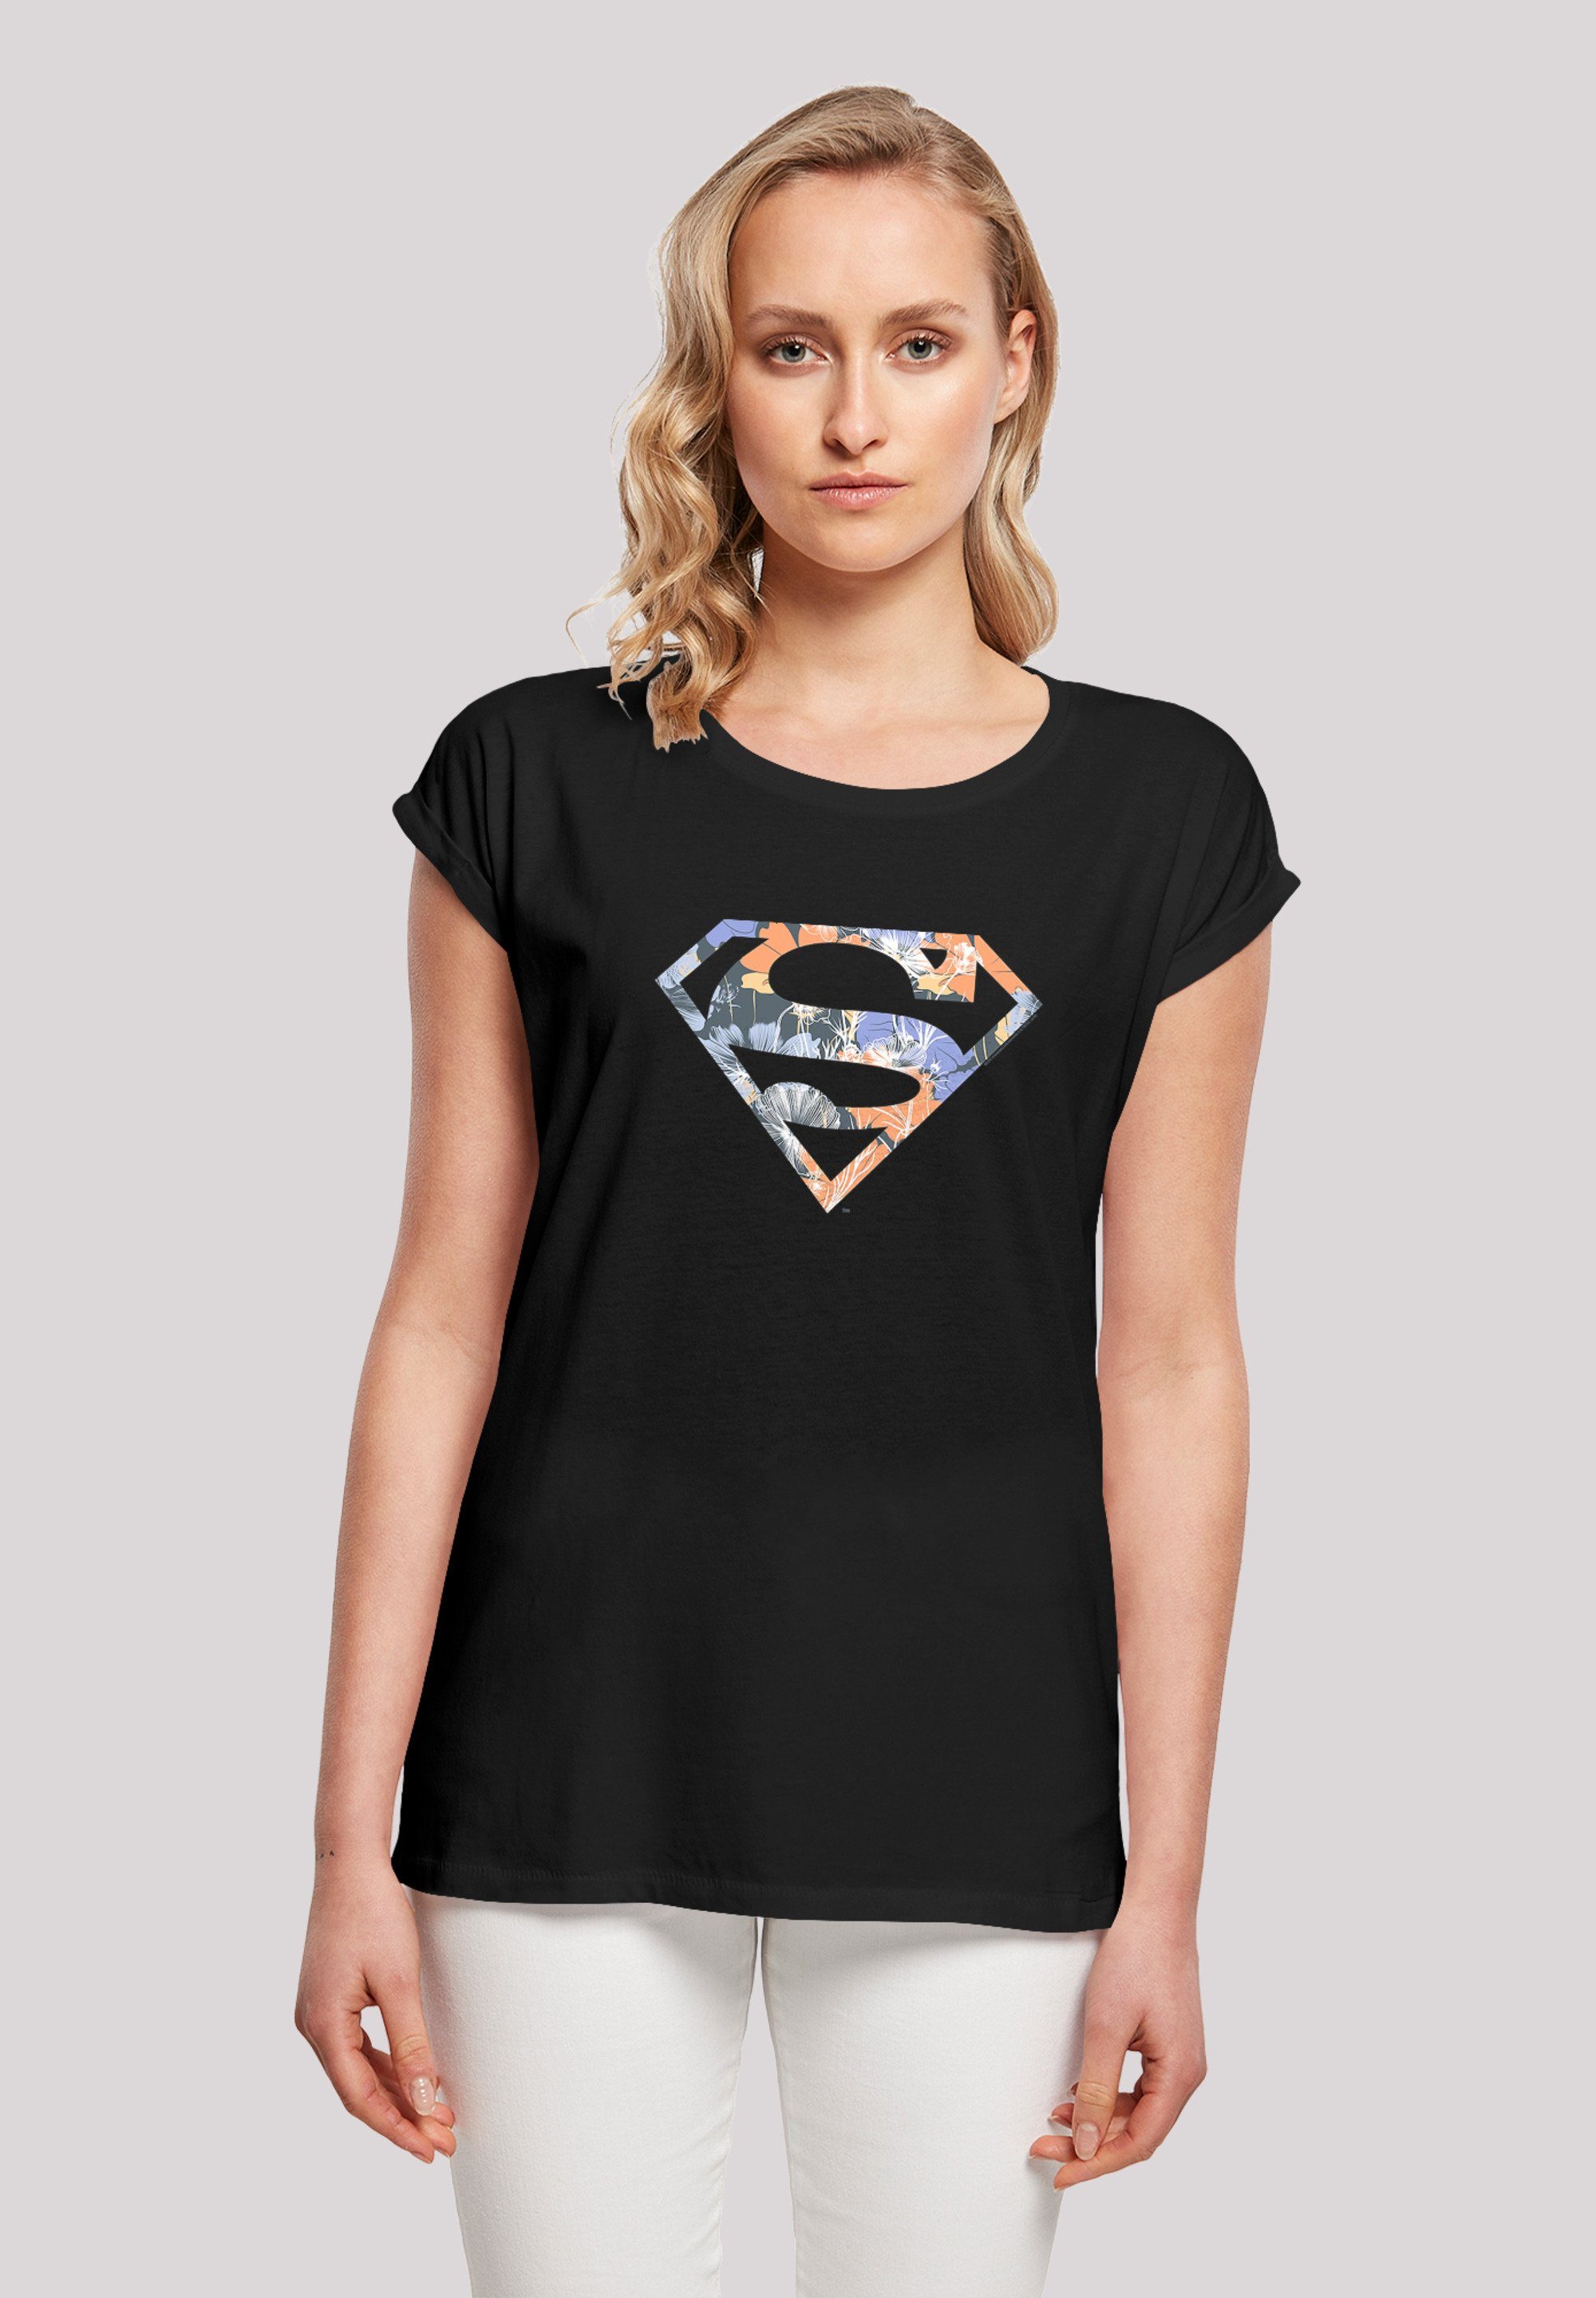 F4NT4STIC T-Shirt DC Print Superman Superheld Comics Logo Floral